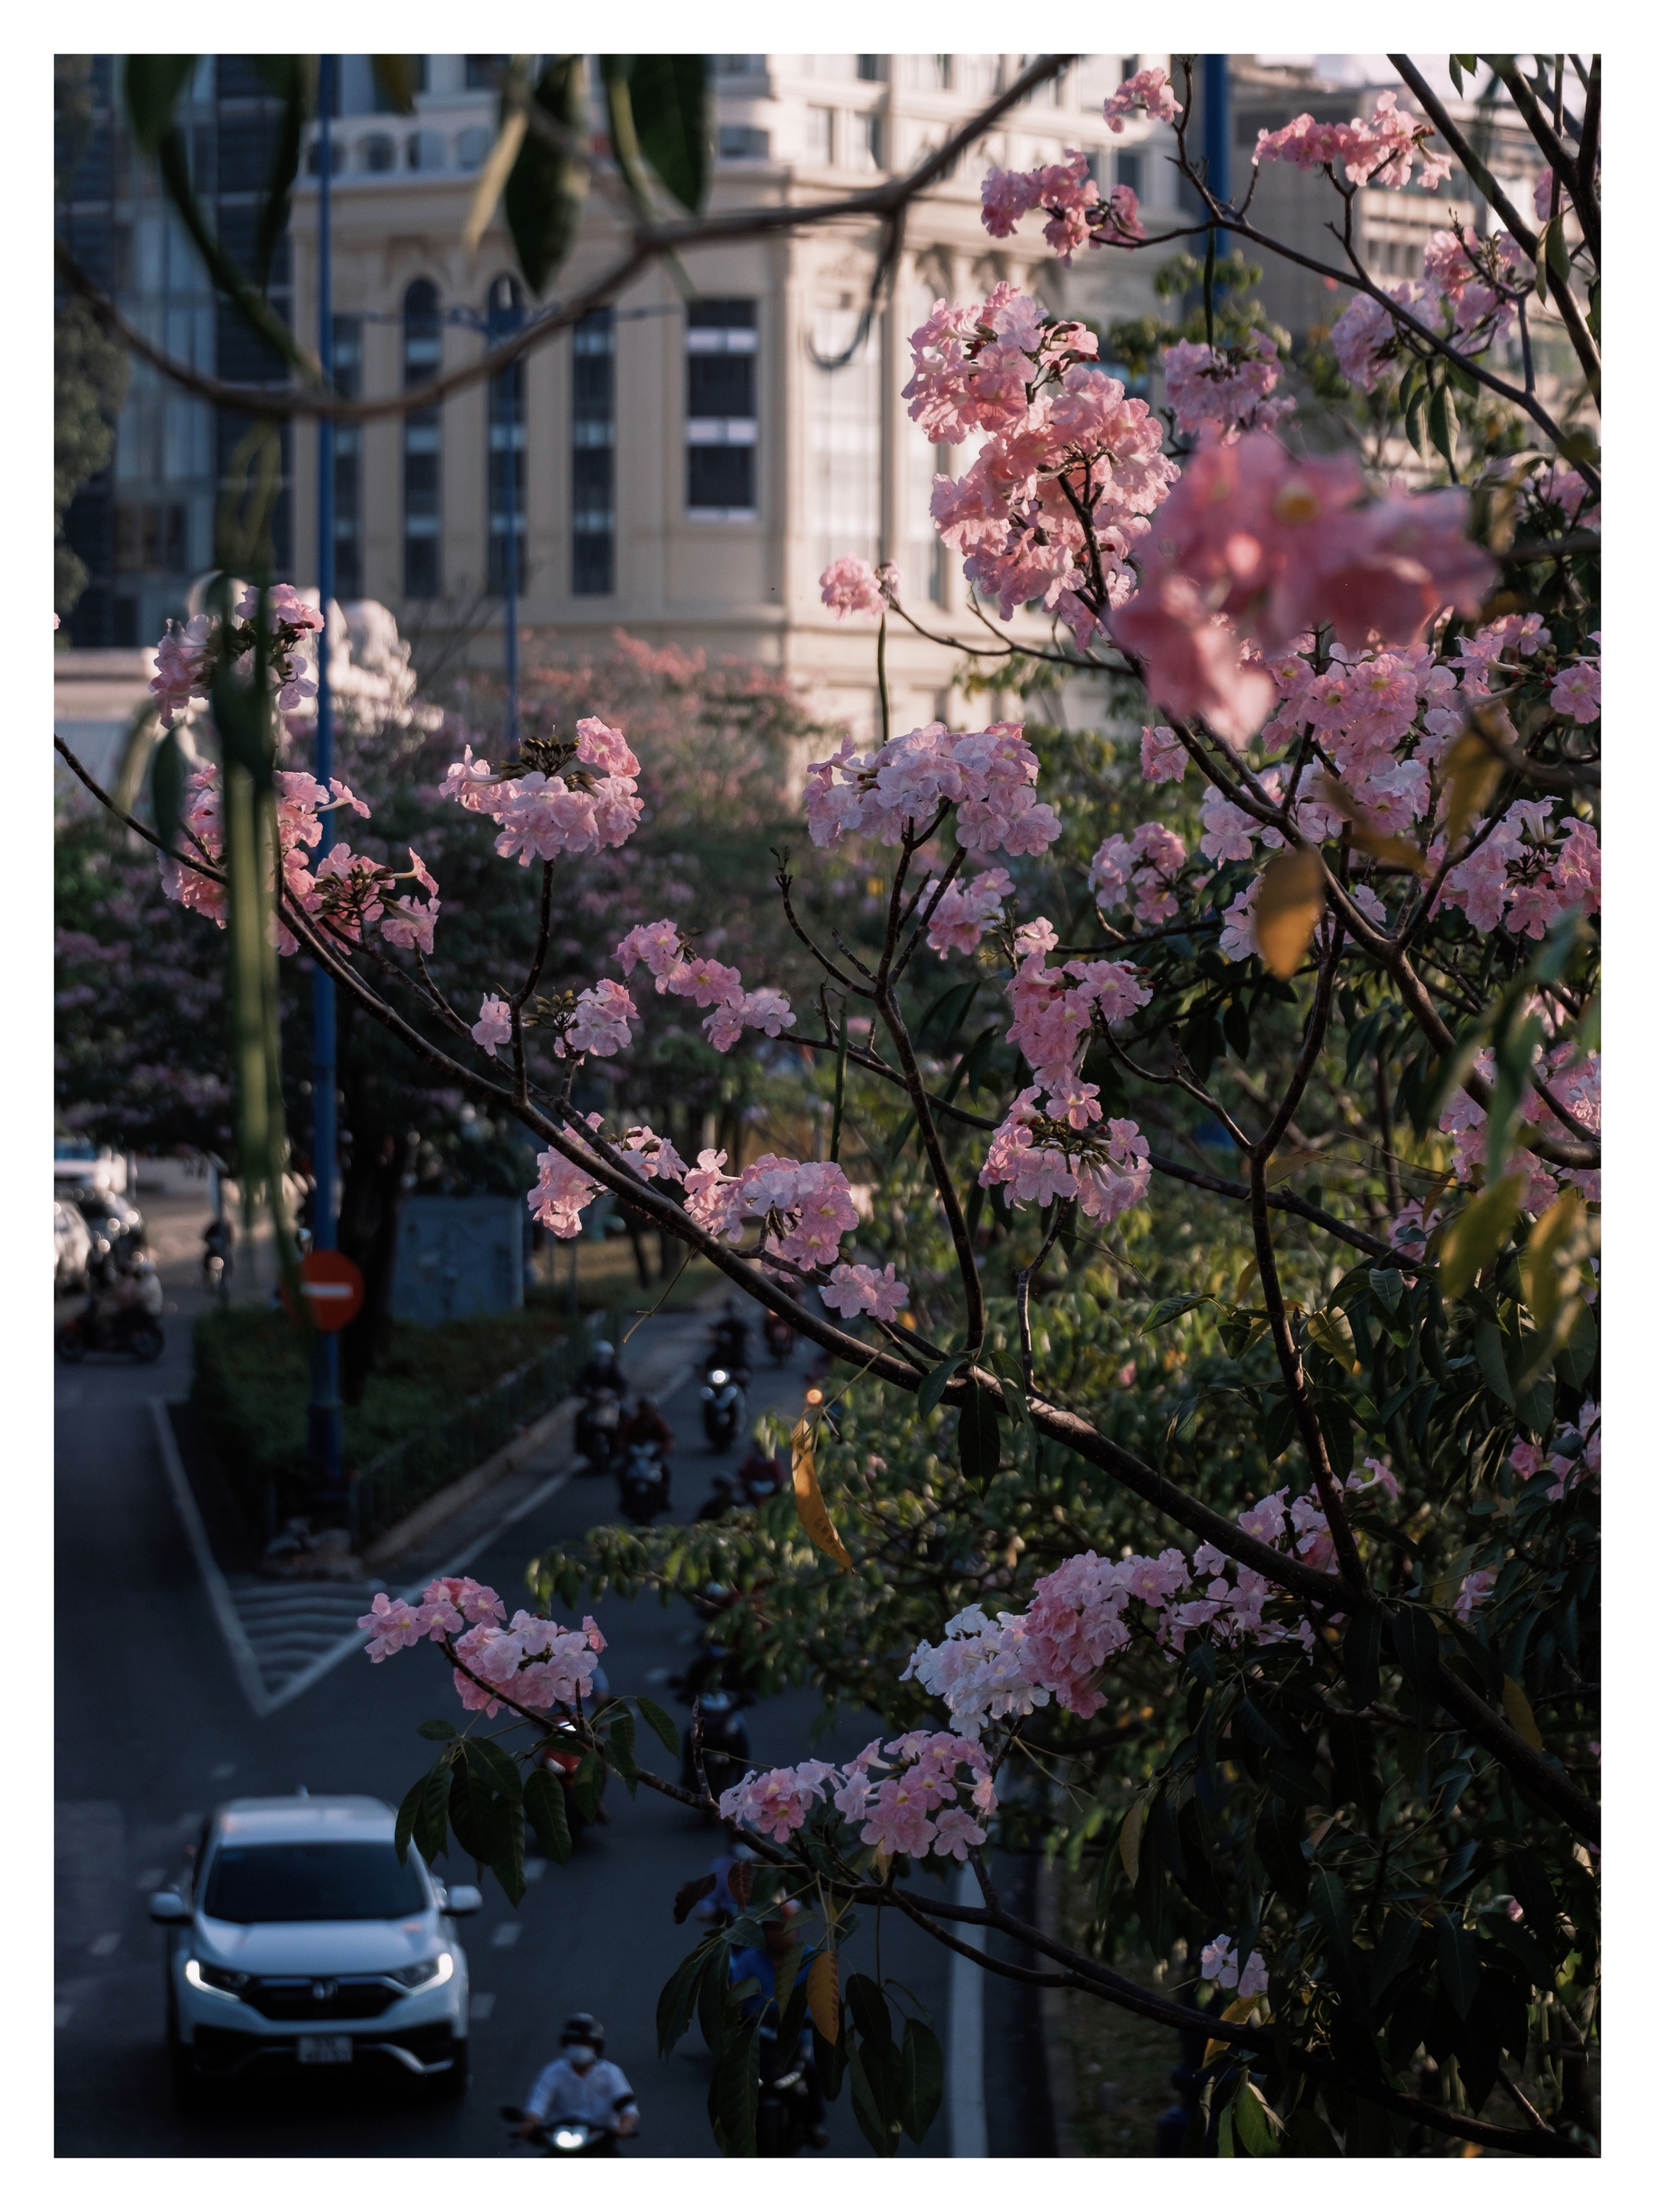 Mùa kèn hồng rợp trời Sài Gòn, chợt thấy thành phố mộng mơ biết bao giữa sắc hoa rực rỡ- Ảnh 18.